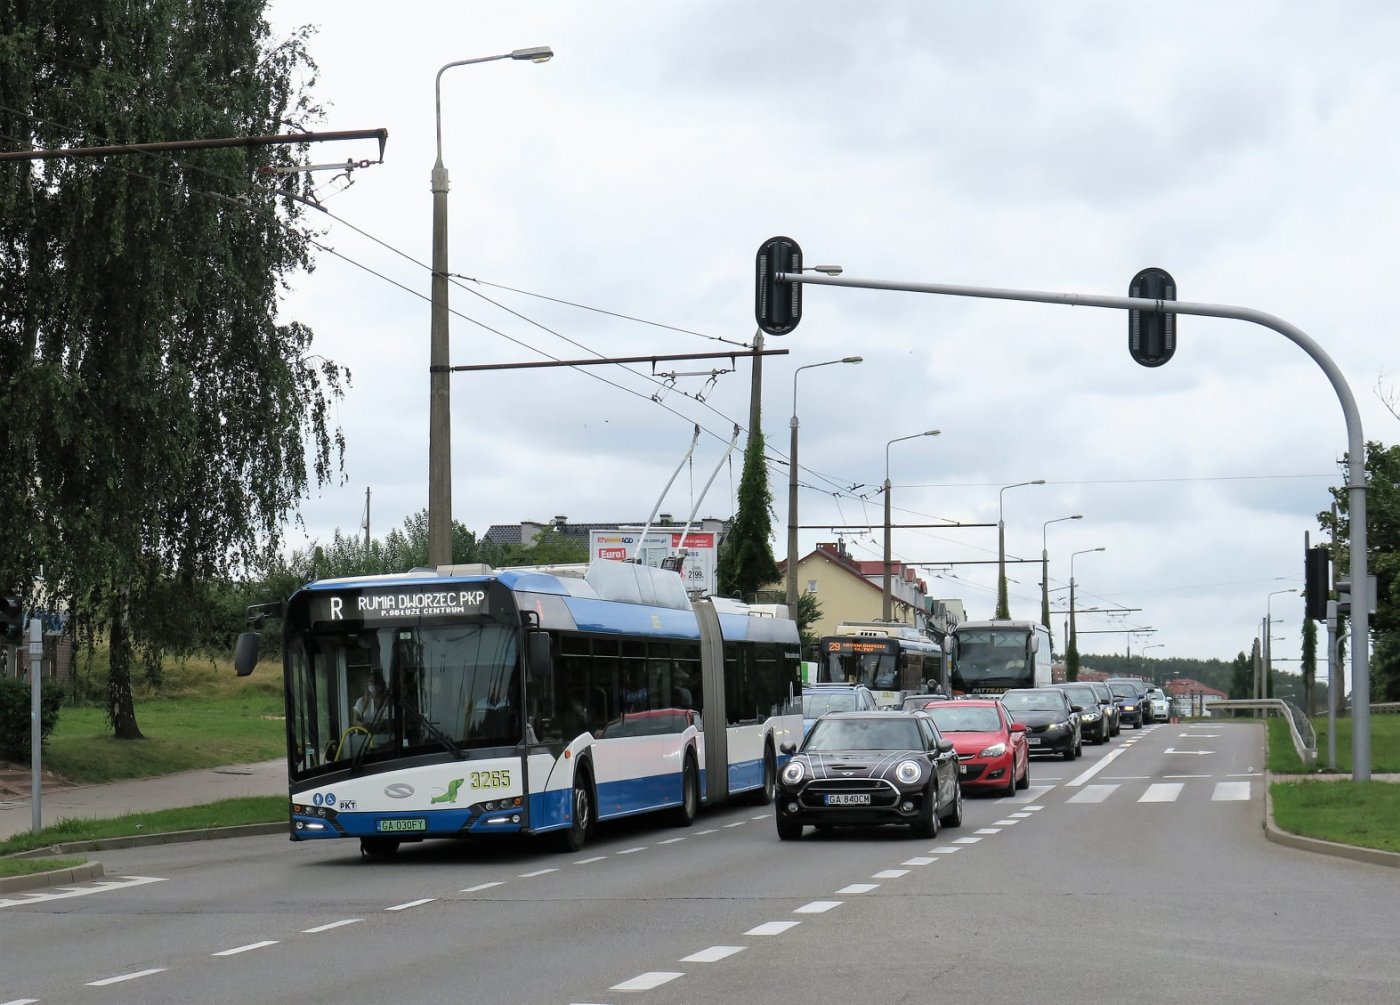 Przegubowy trolejbus Solaris w ruchu ulicznym, podpięty do pantografu. Na wyświetlaczu nazwa linii R, obok samochody.